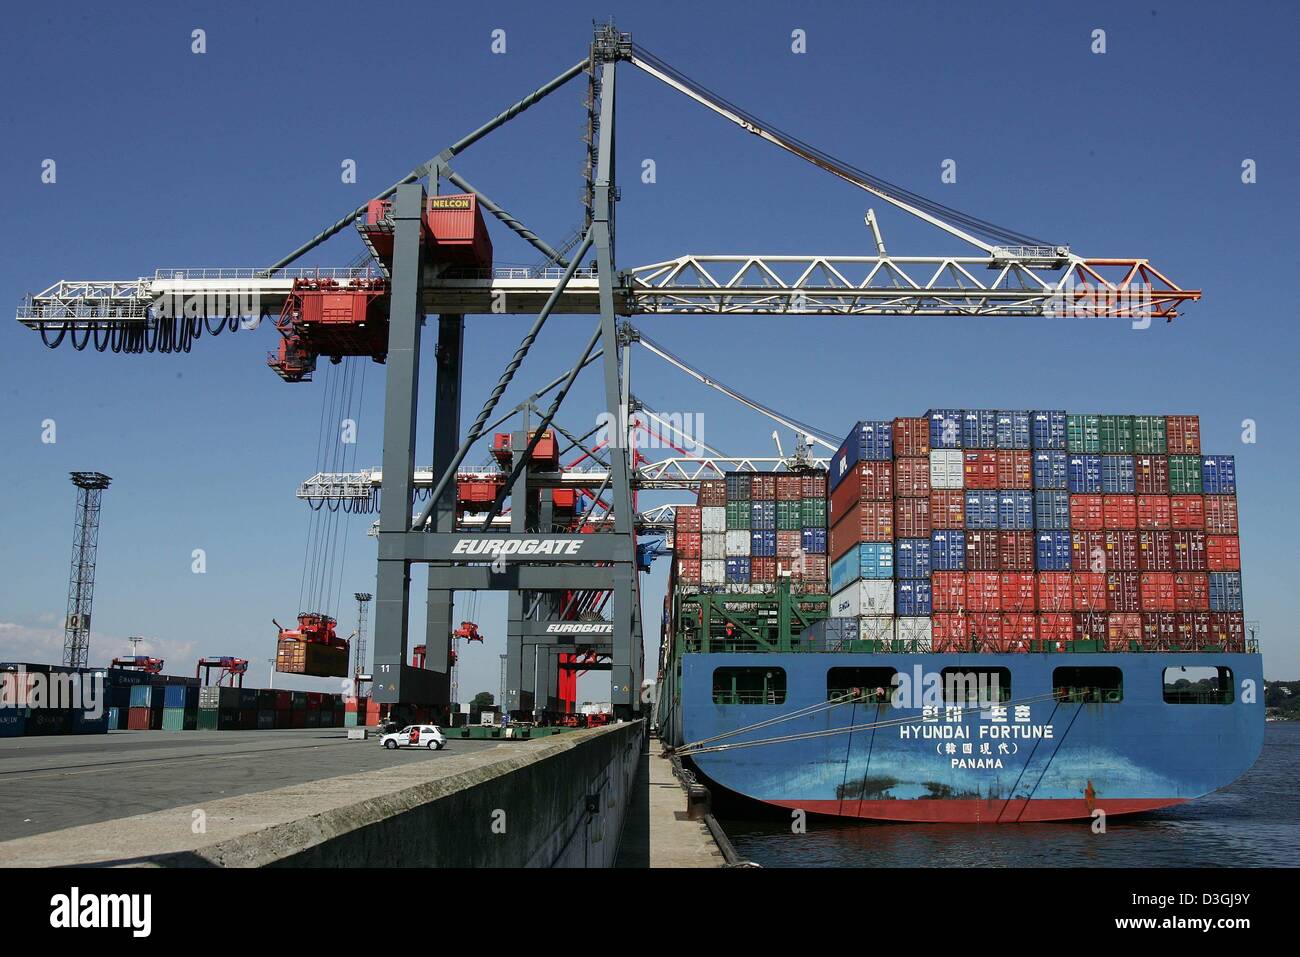 Une ligne de grues se déplace autour de grands conteneurs au niveau du conteneur dans le port de Hambourg, Allemagne, 29 juillet 2004. Le port à conteneurs continue à être le port européen avec la plus forte croissance de l'entreprise d'expédition pour la cinquième année consécutive. Mots-clés : Economy-Business-Finance, EBF, des Transports, de l'entreprise informations, conteneurs, port, voyage, navire porte-conteneurs, conteneurs, ALLEMAND Banque D'Images